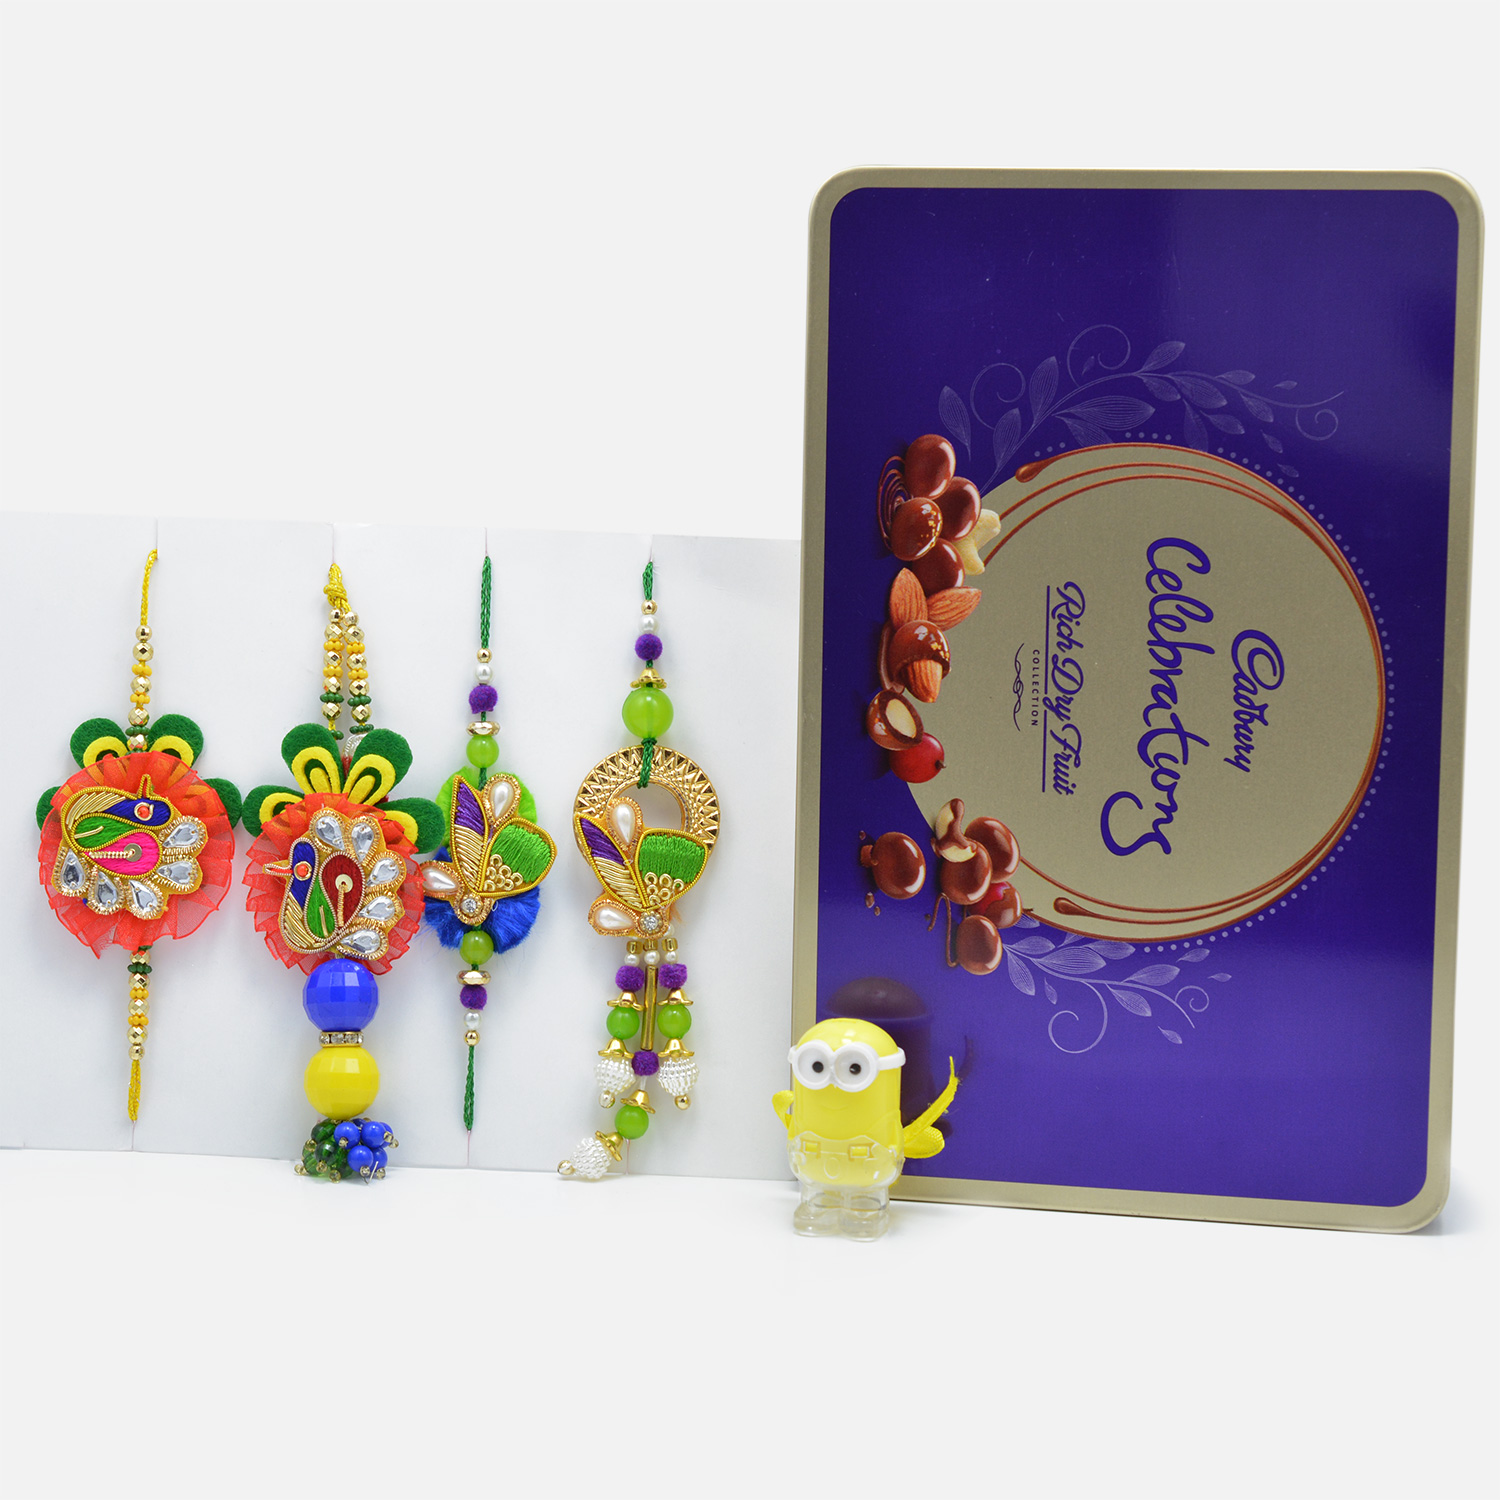 Designer Zardozi Rakhi Set of 4 for Bhaiya-Bhabhi and LED Minion Kids Rakhi with Tempting Cadbury Celebration Rich Dry Fruit Chocolate Collection